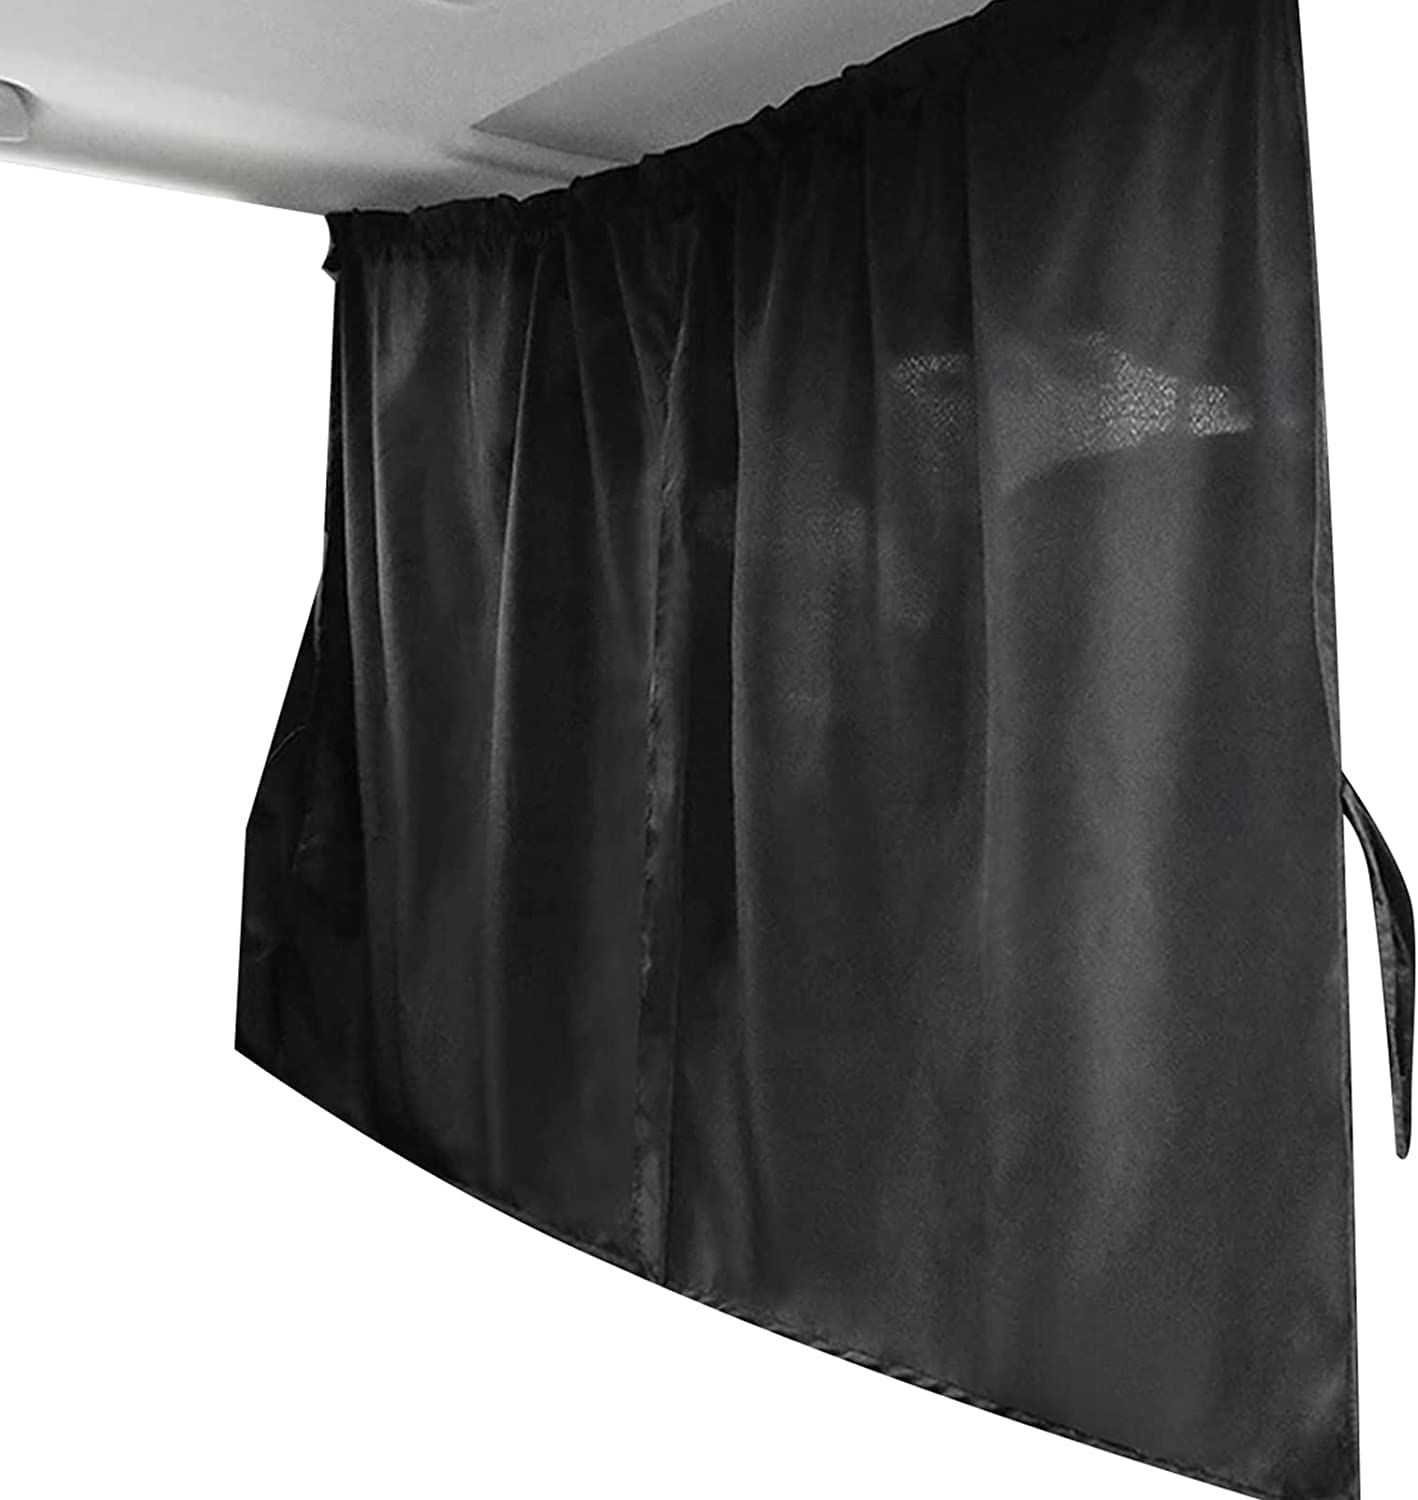 Auto-Trennwand-Sichtschutzvorhang, 190 x 120 cm großer Auto-Sonnenschutz schwarz Trennvorhang für Vorder- und Rücksitze Kofferraumfenster Sonnenschutz für T4, T5, T6, Wohnmobil Camping von JUTTAUTO